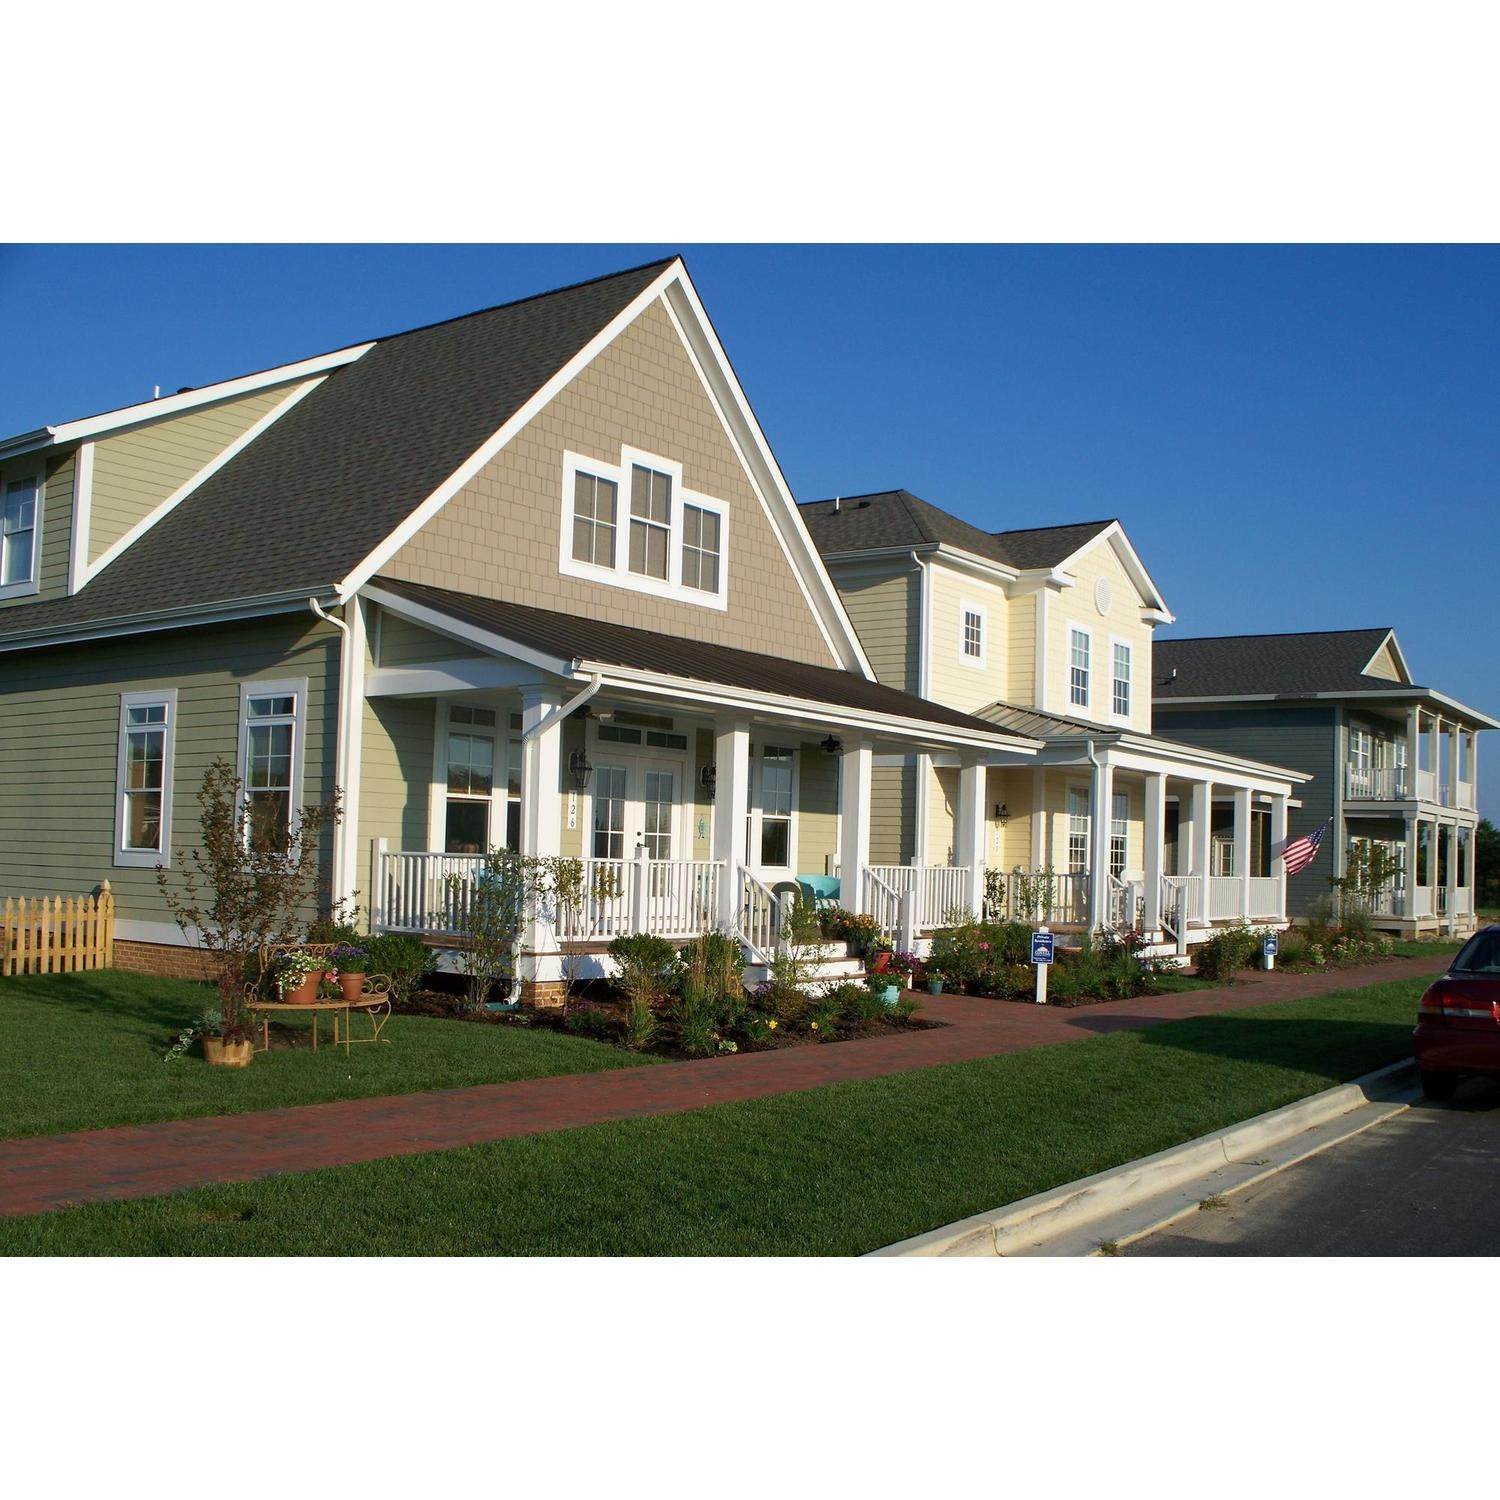 5. Covell Signature Homes edificio a 110 Channel Marker Way, Grasonville, MD 21638